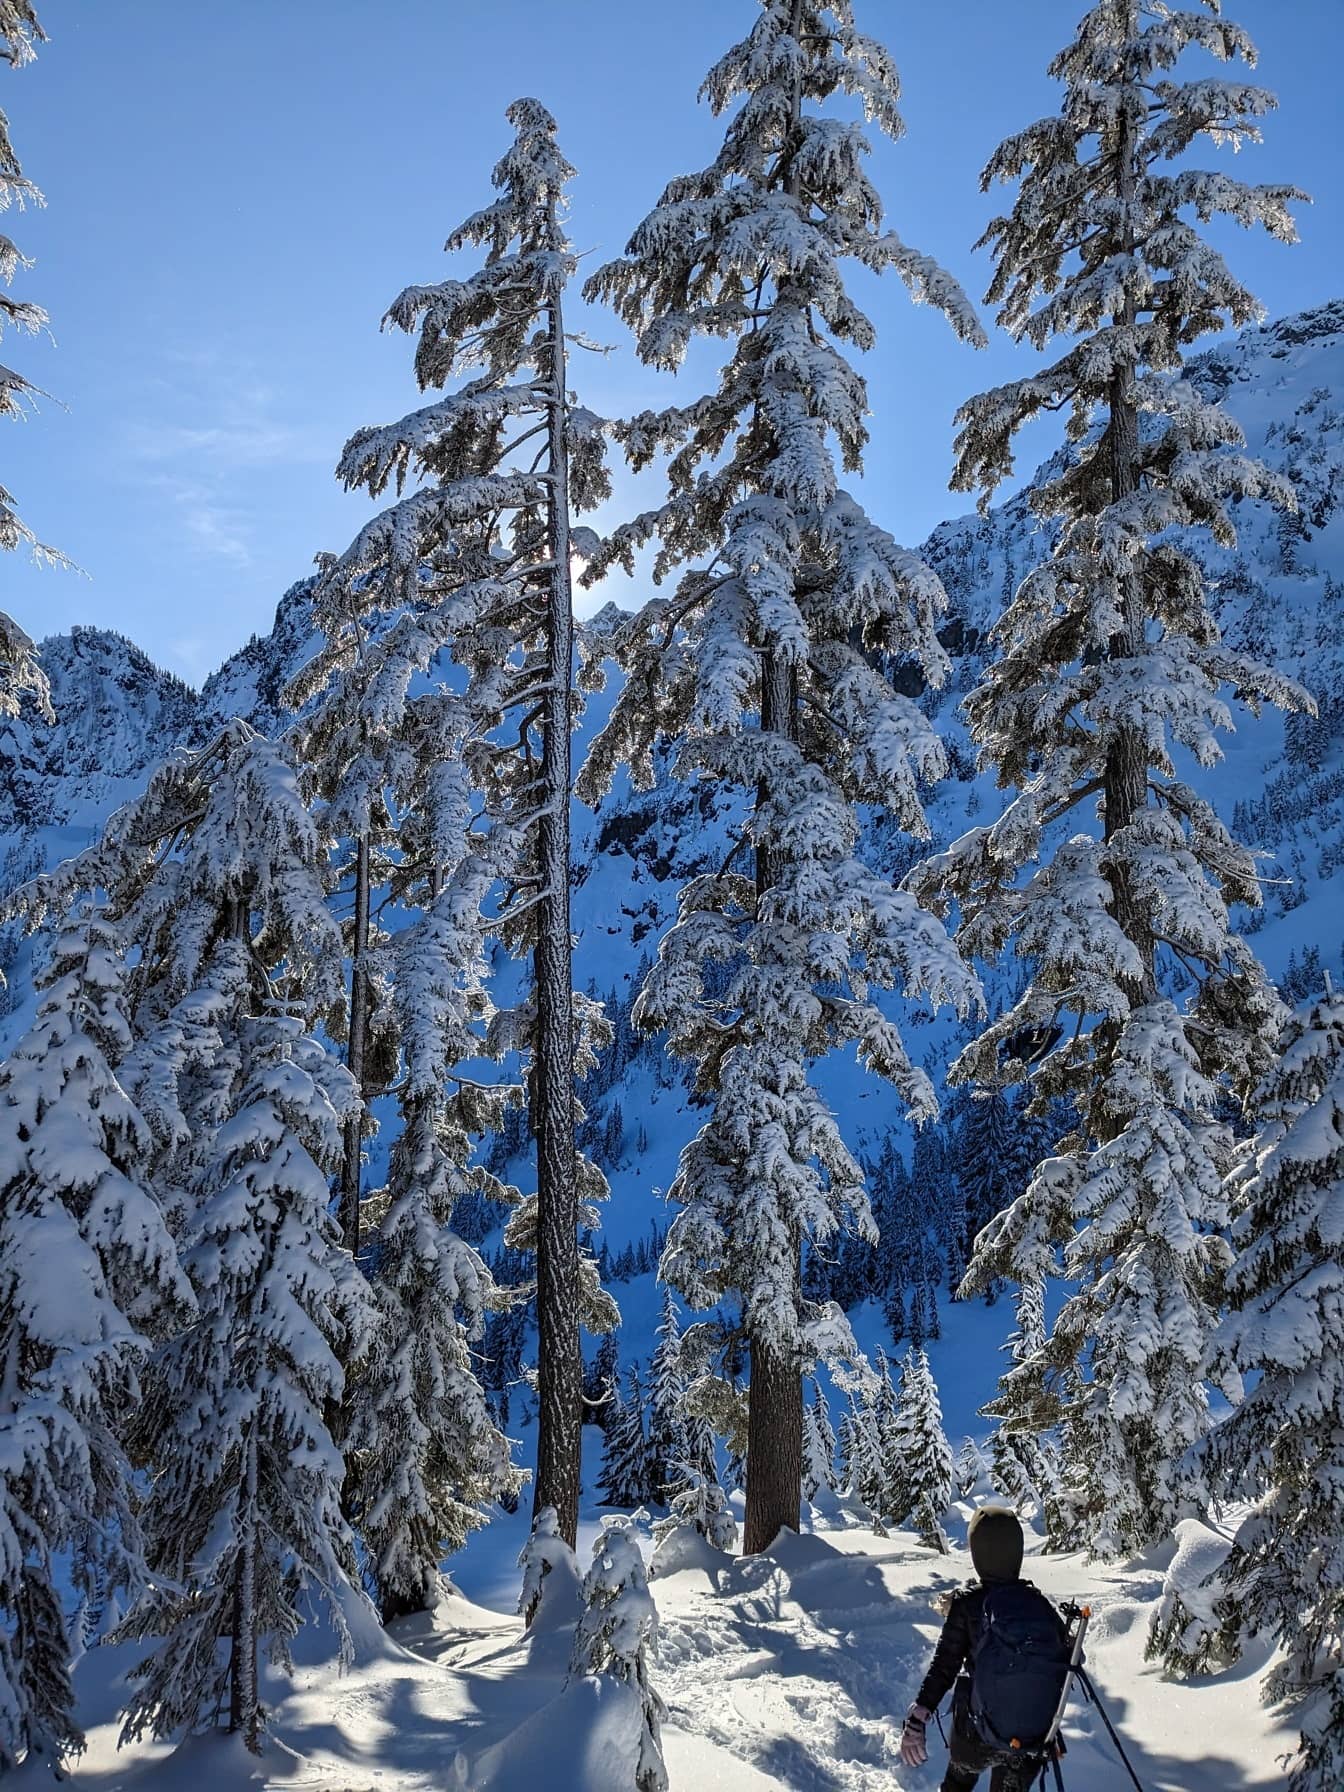 Pemain ski berjalan berpikir pohon konifer bersalju pada hari yang cerah